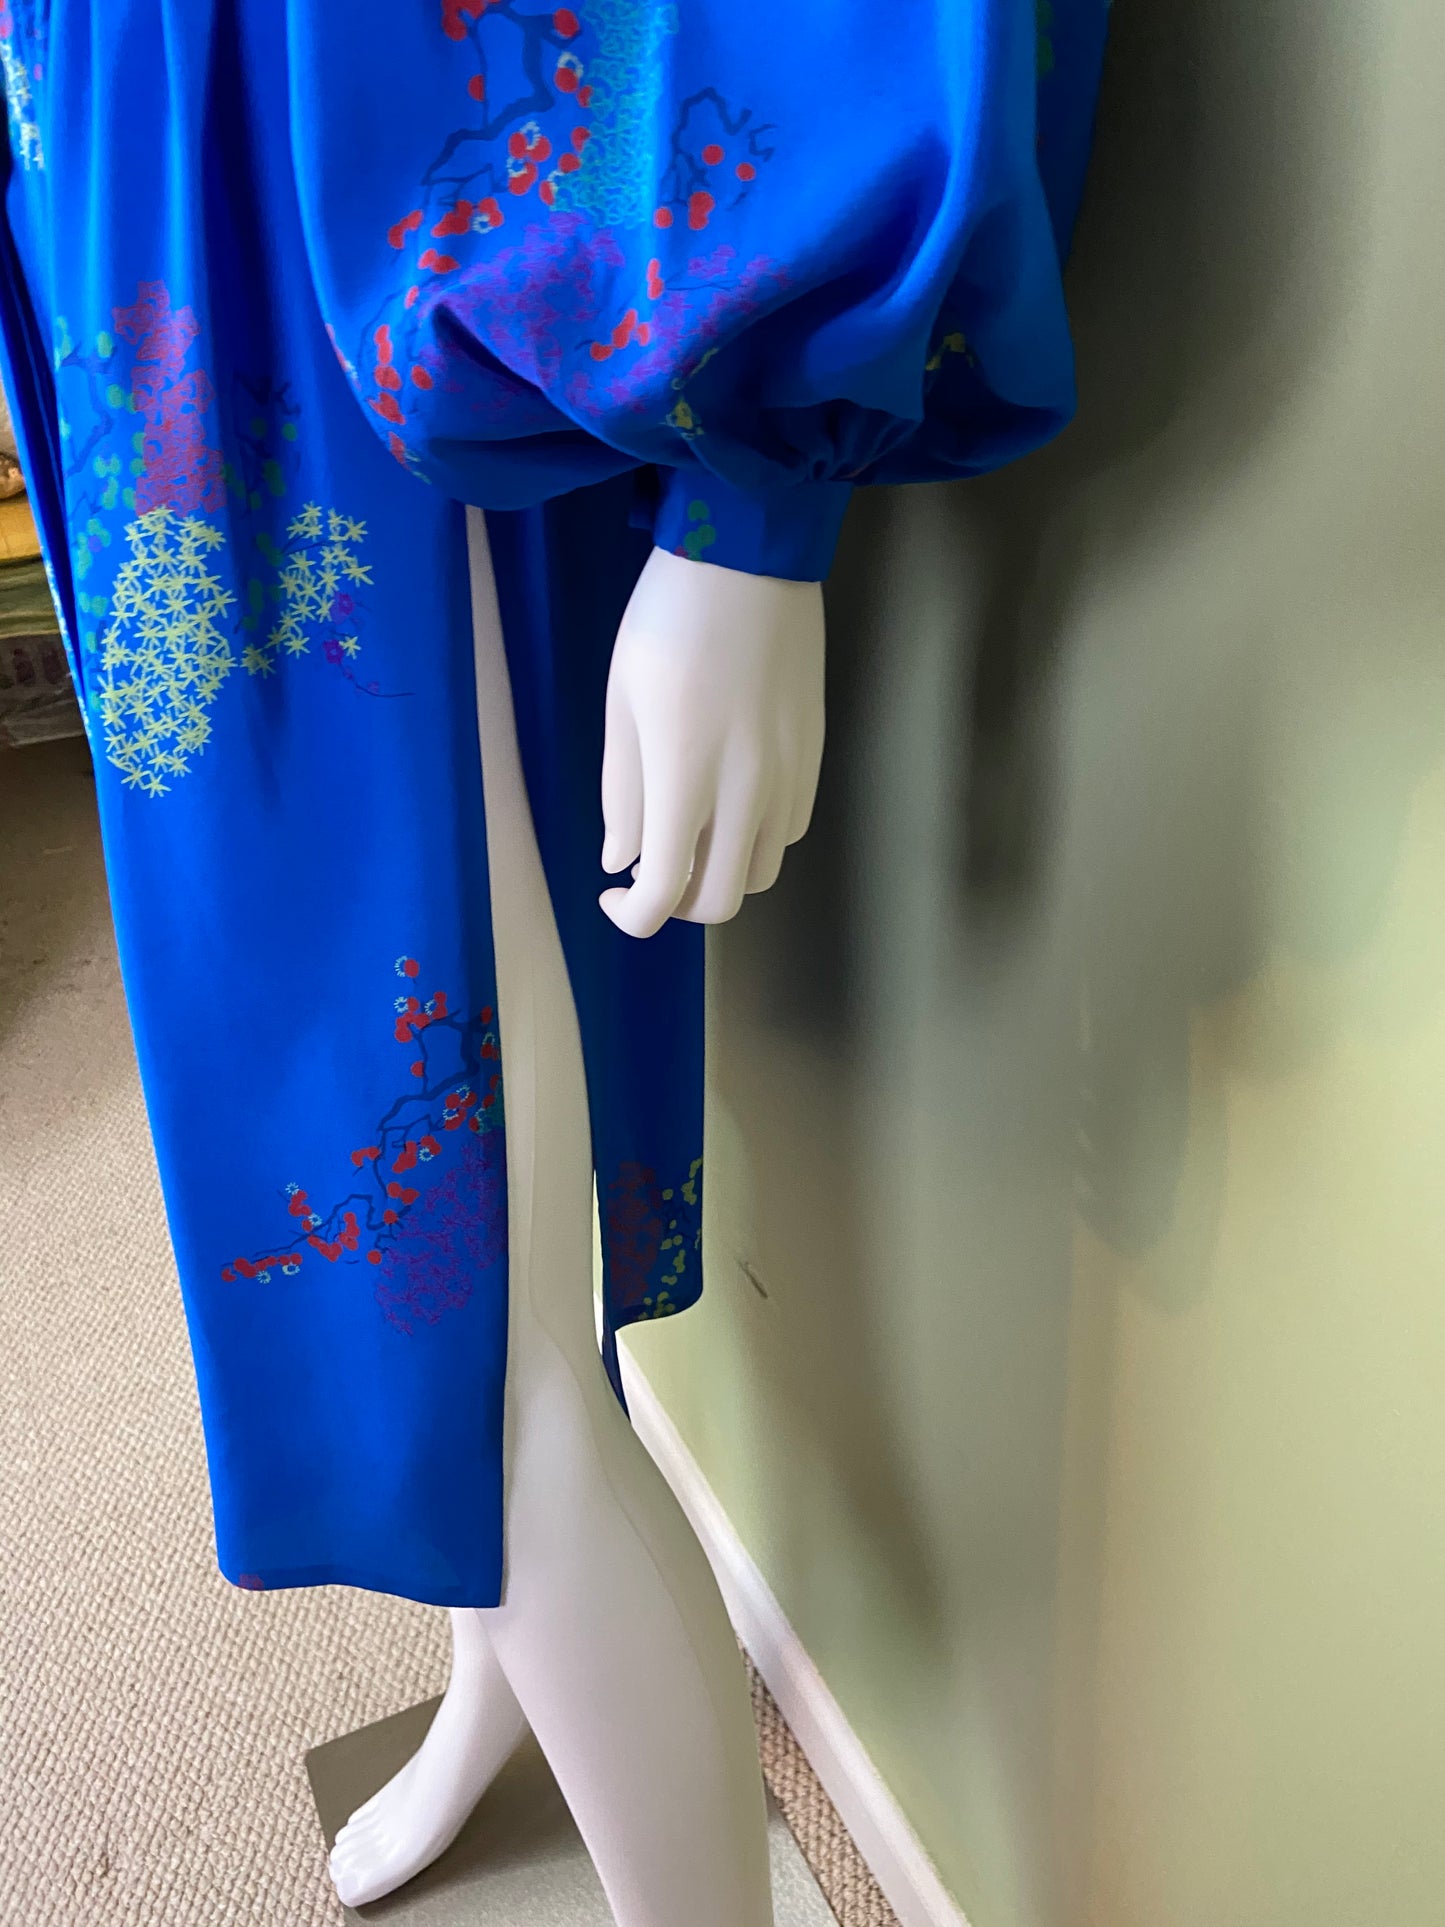 LANVIN Vintage Floral Royal Blue Silk Dress with Skirt